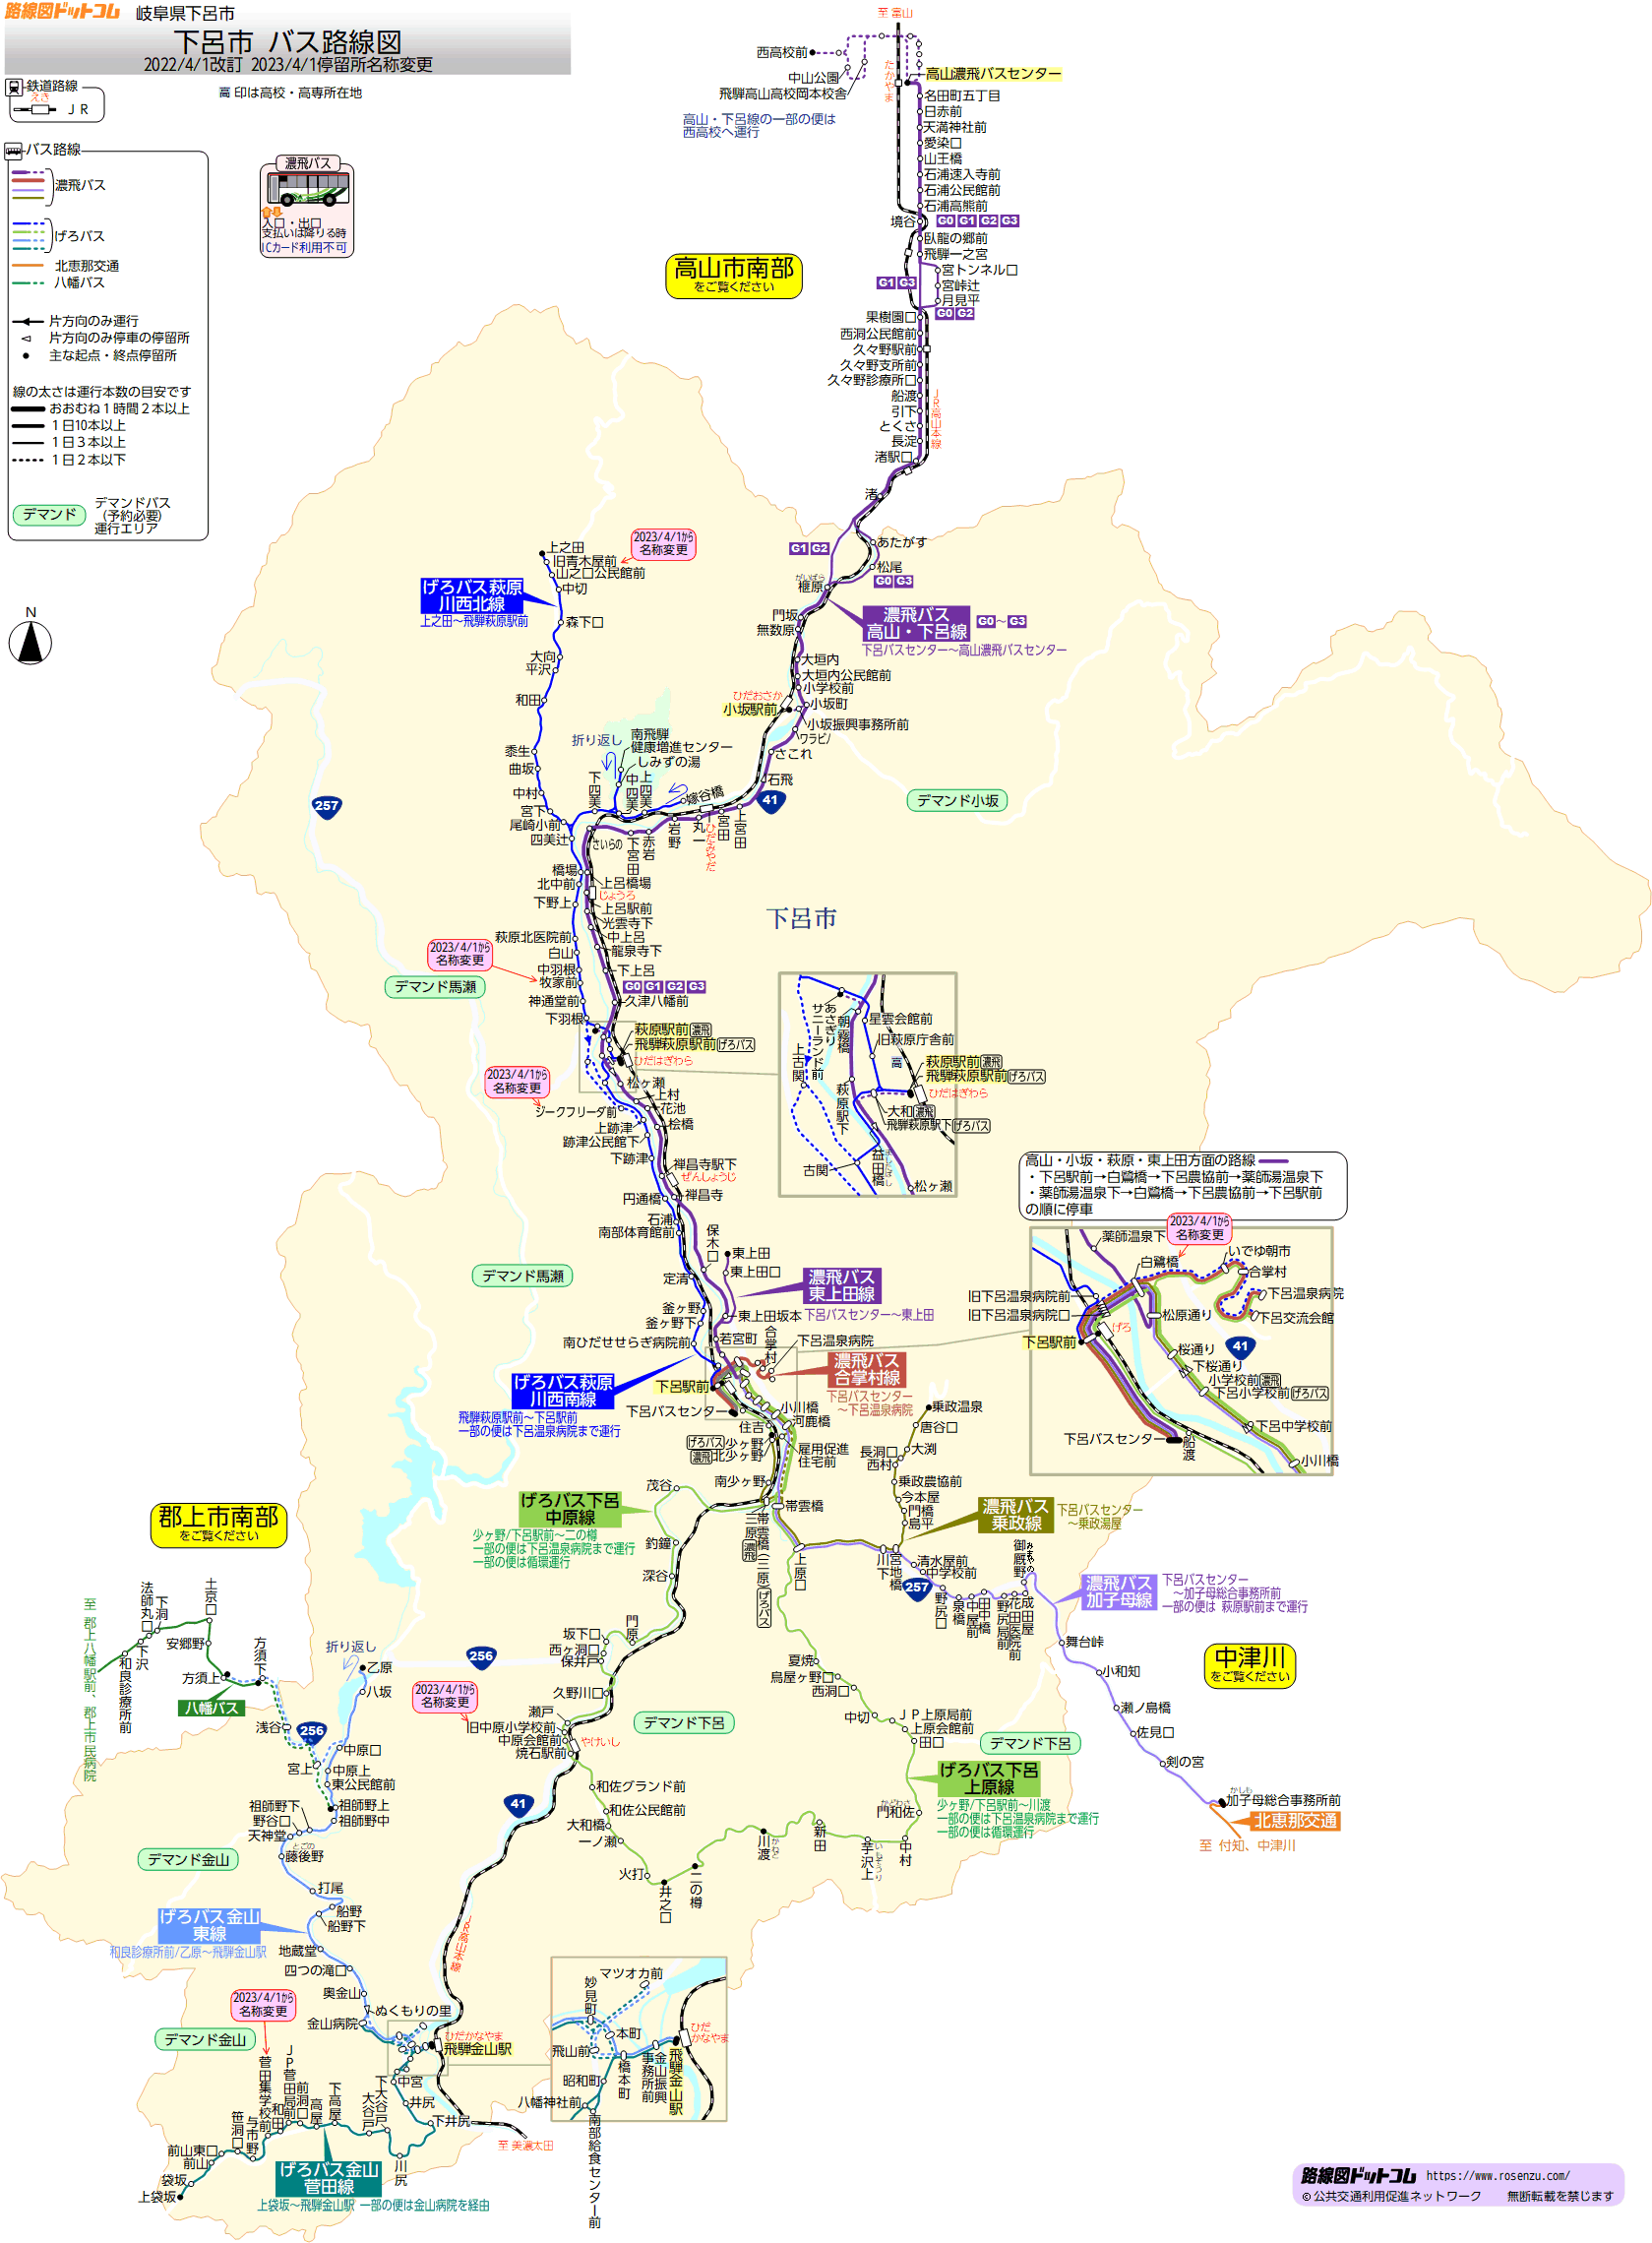 路線図ドットコム 岐阜県 下呂市バス路線図